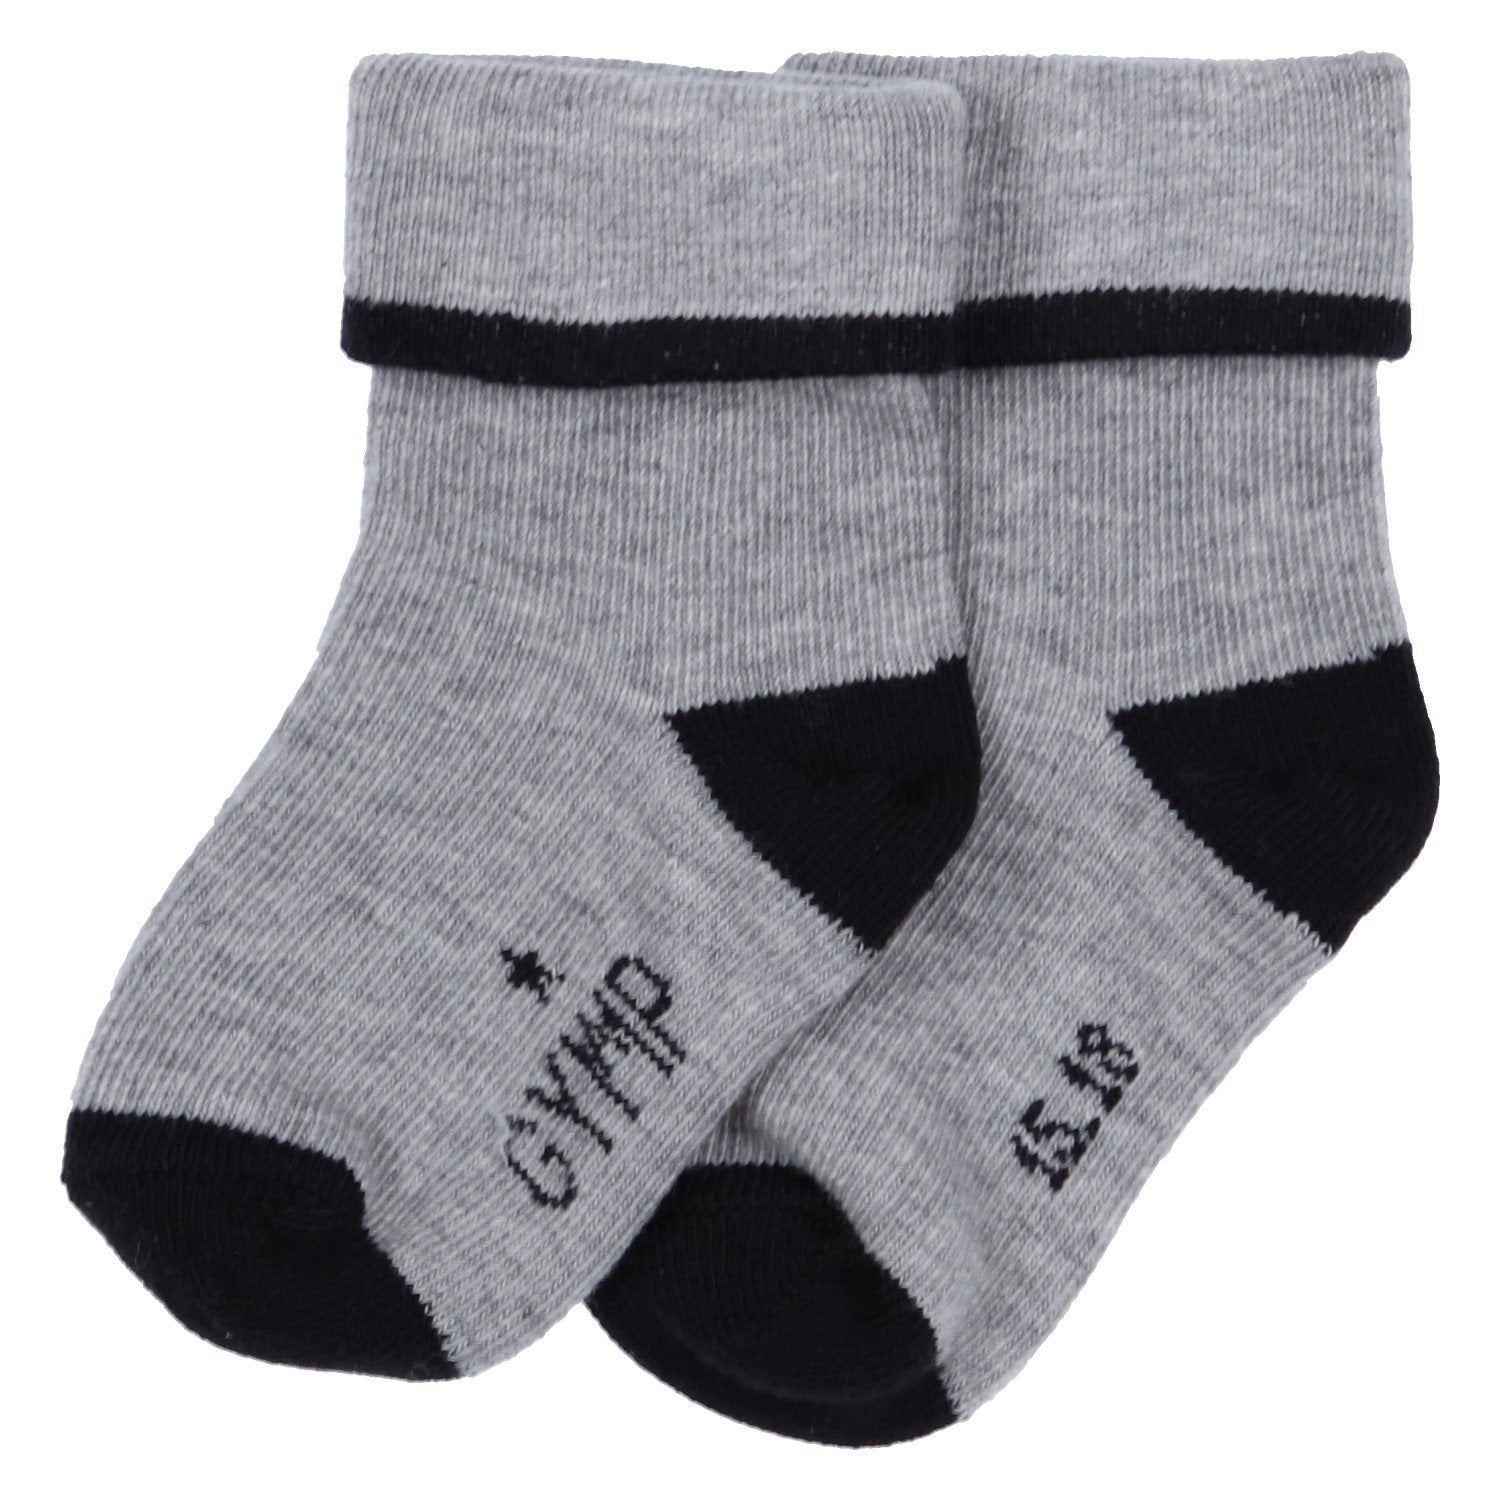 Baby jongens SOKKEN - boys socks - Preminim van GYMP in de kleur BLAUW/GRIJS in maat 19, 22.